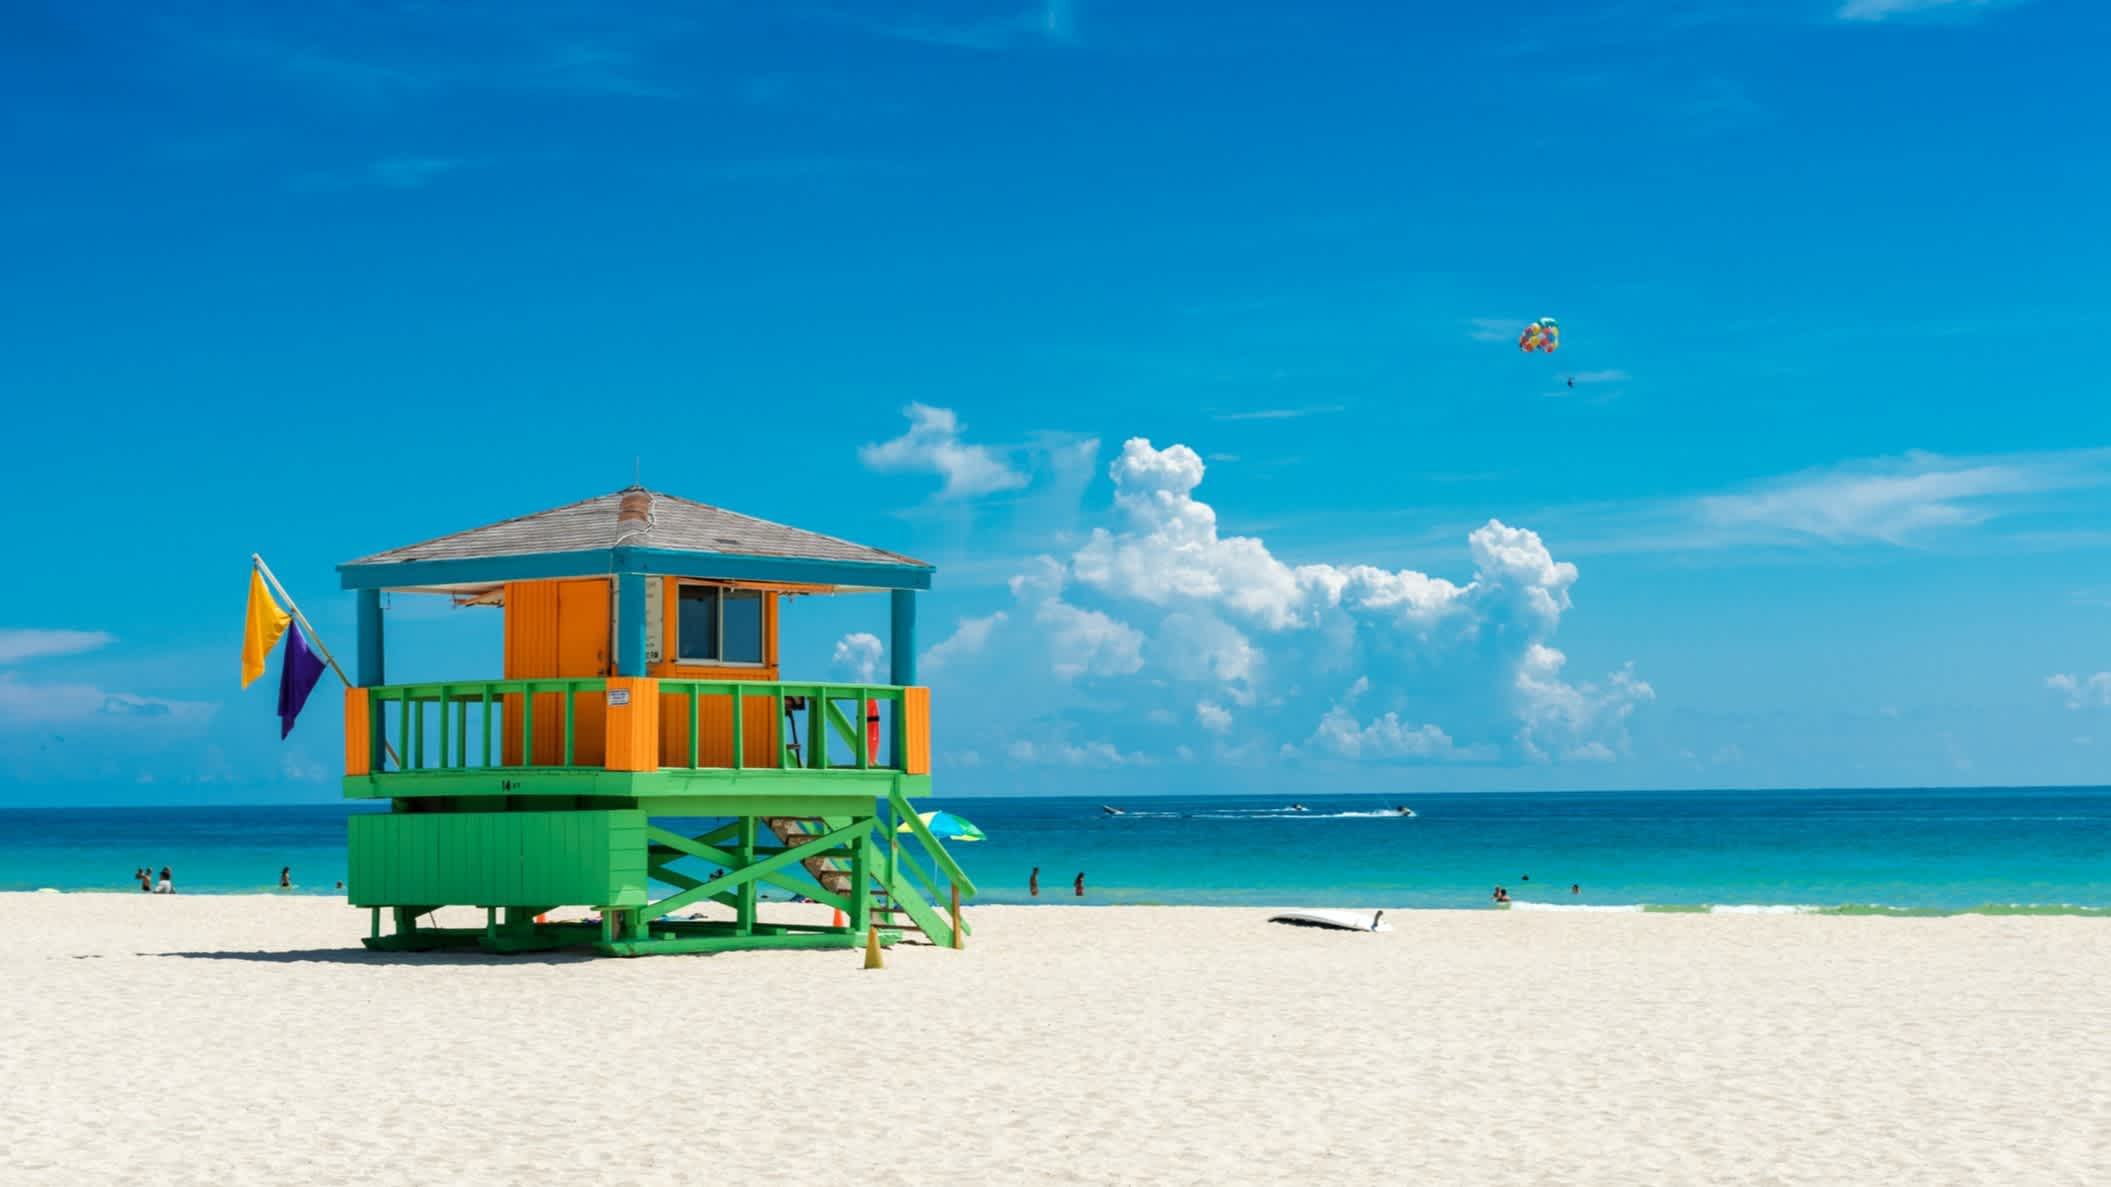 Cabane de maître-nageur à Miami Beach, Floride, États-Unis
